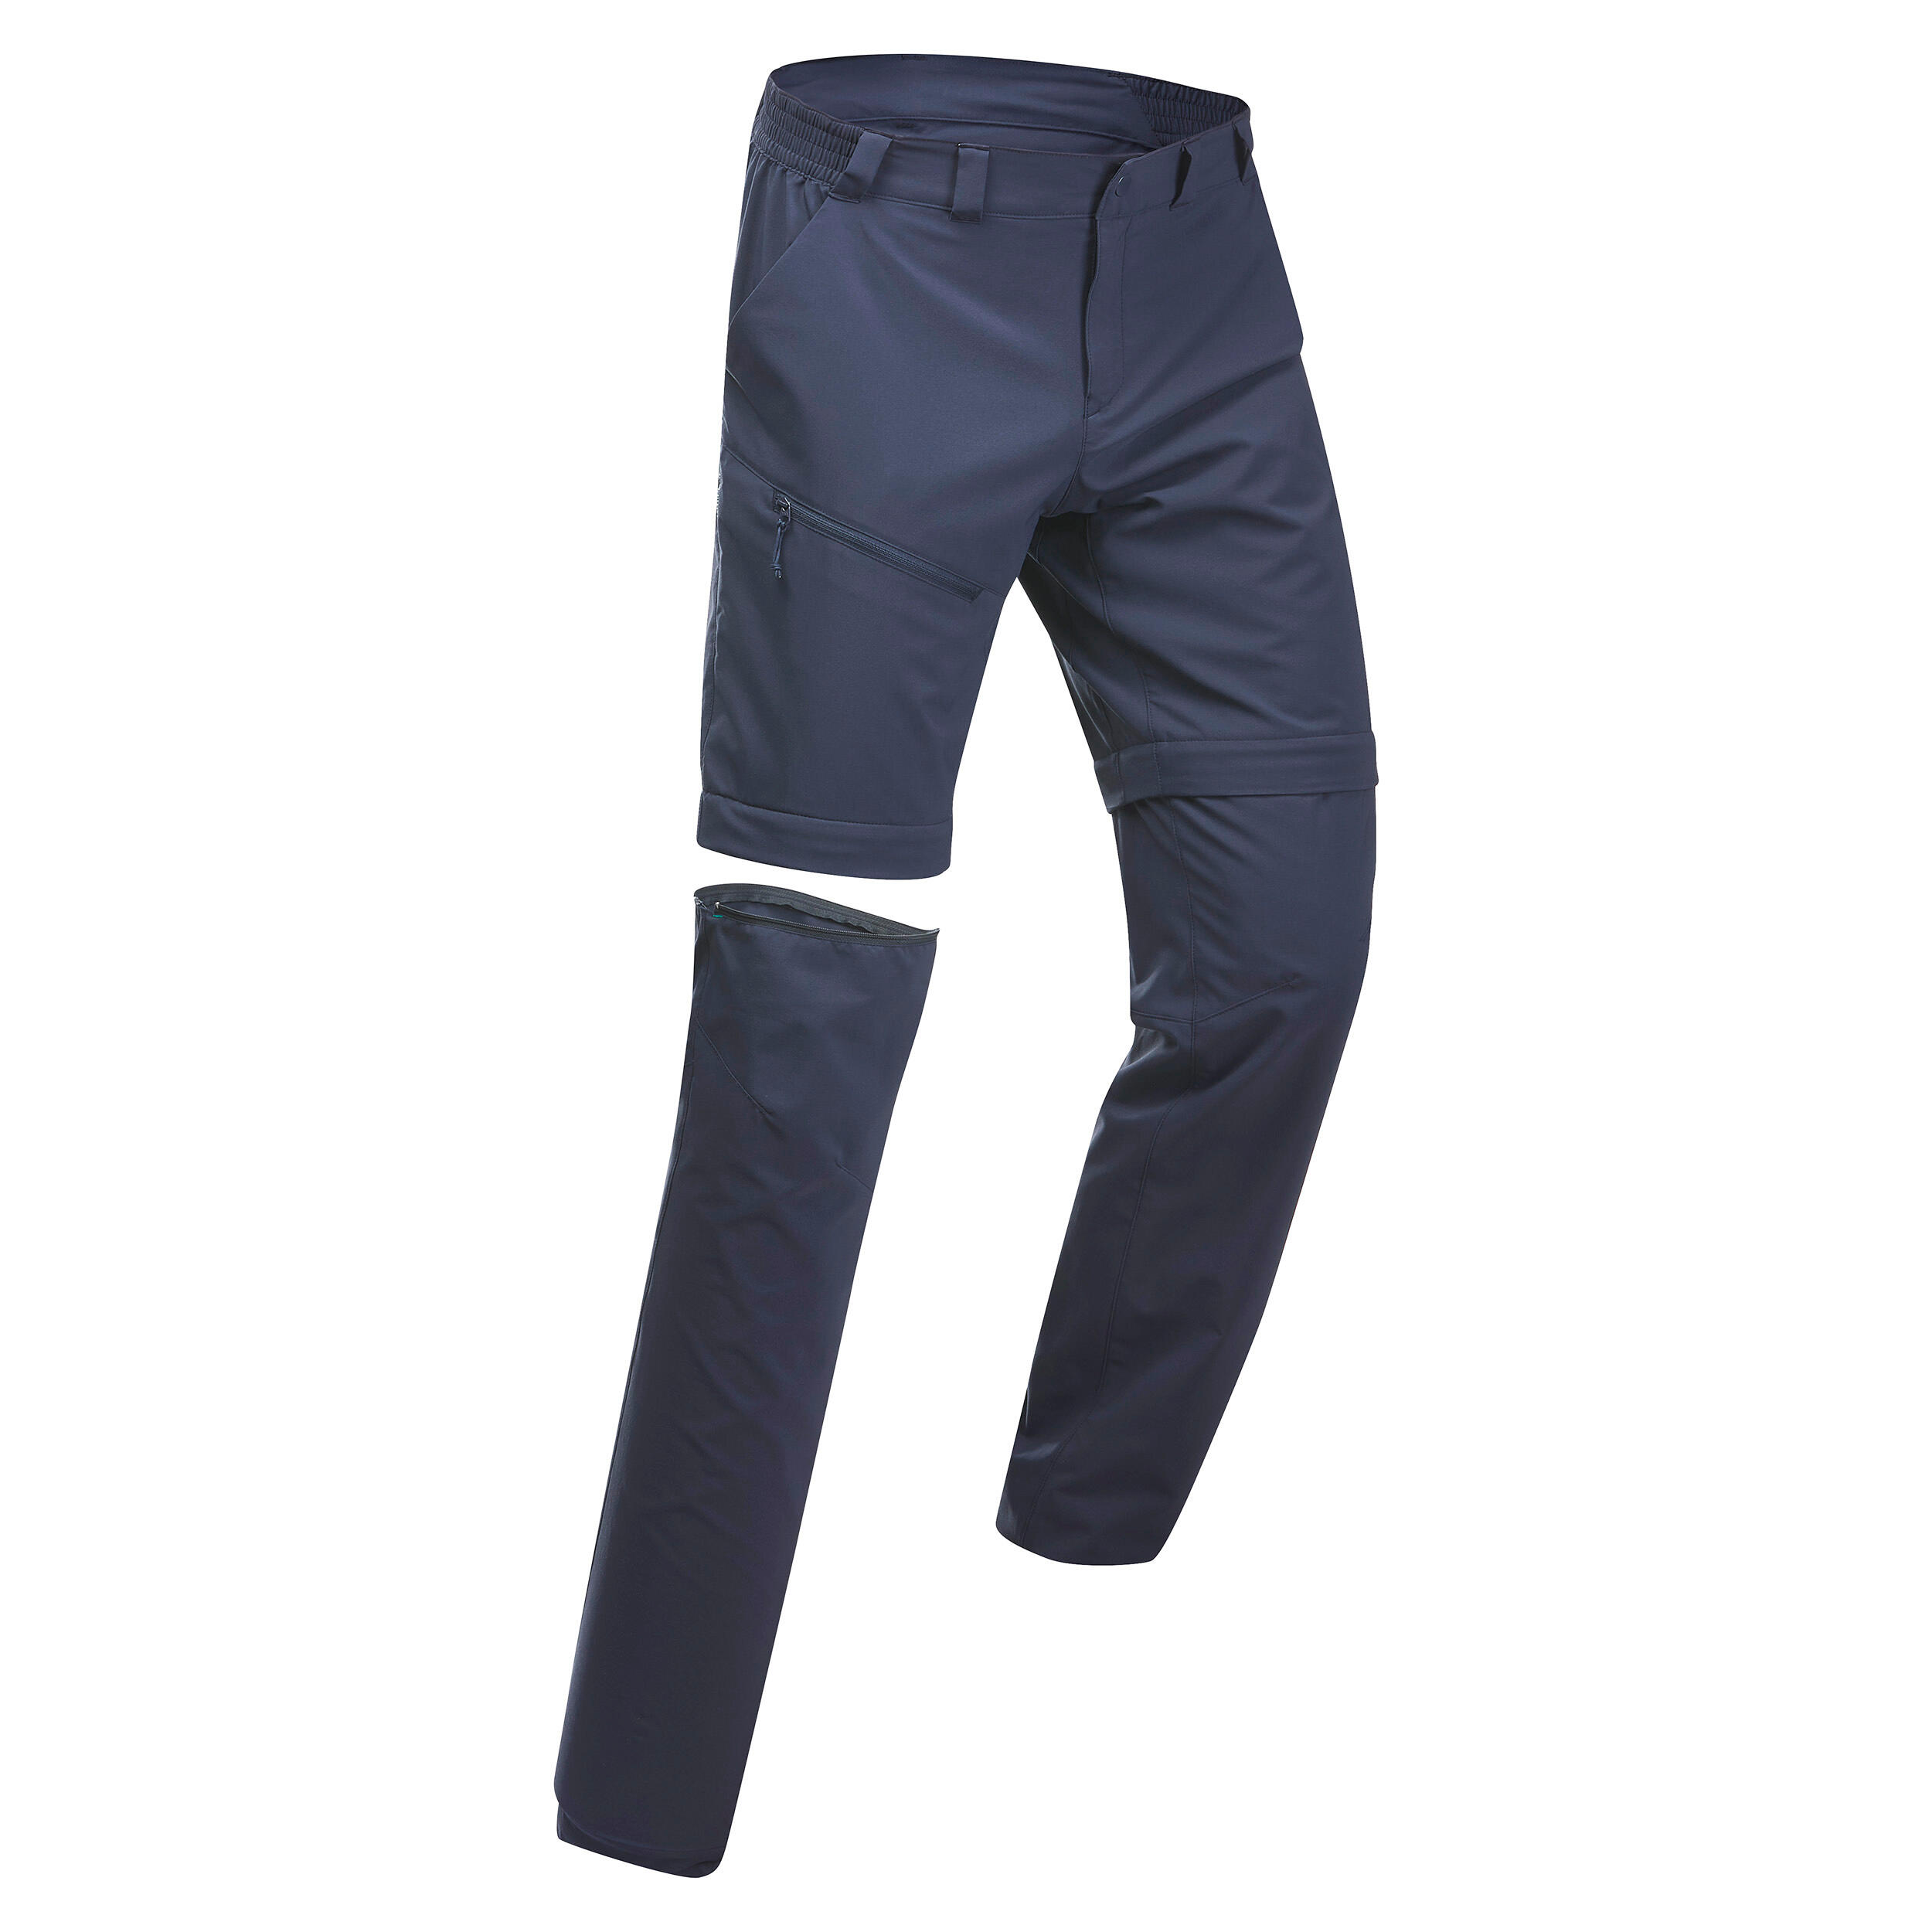 Pantalon Modulabil Drumeție la Munte MH150 Albastru Bărbați Albastru  Imbracaminte trekking si drumetie